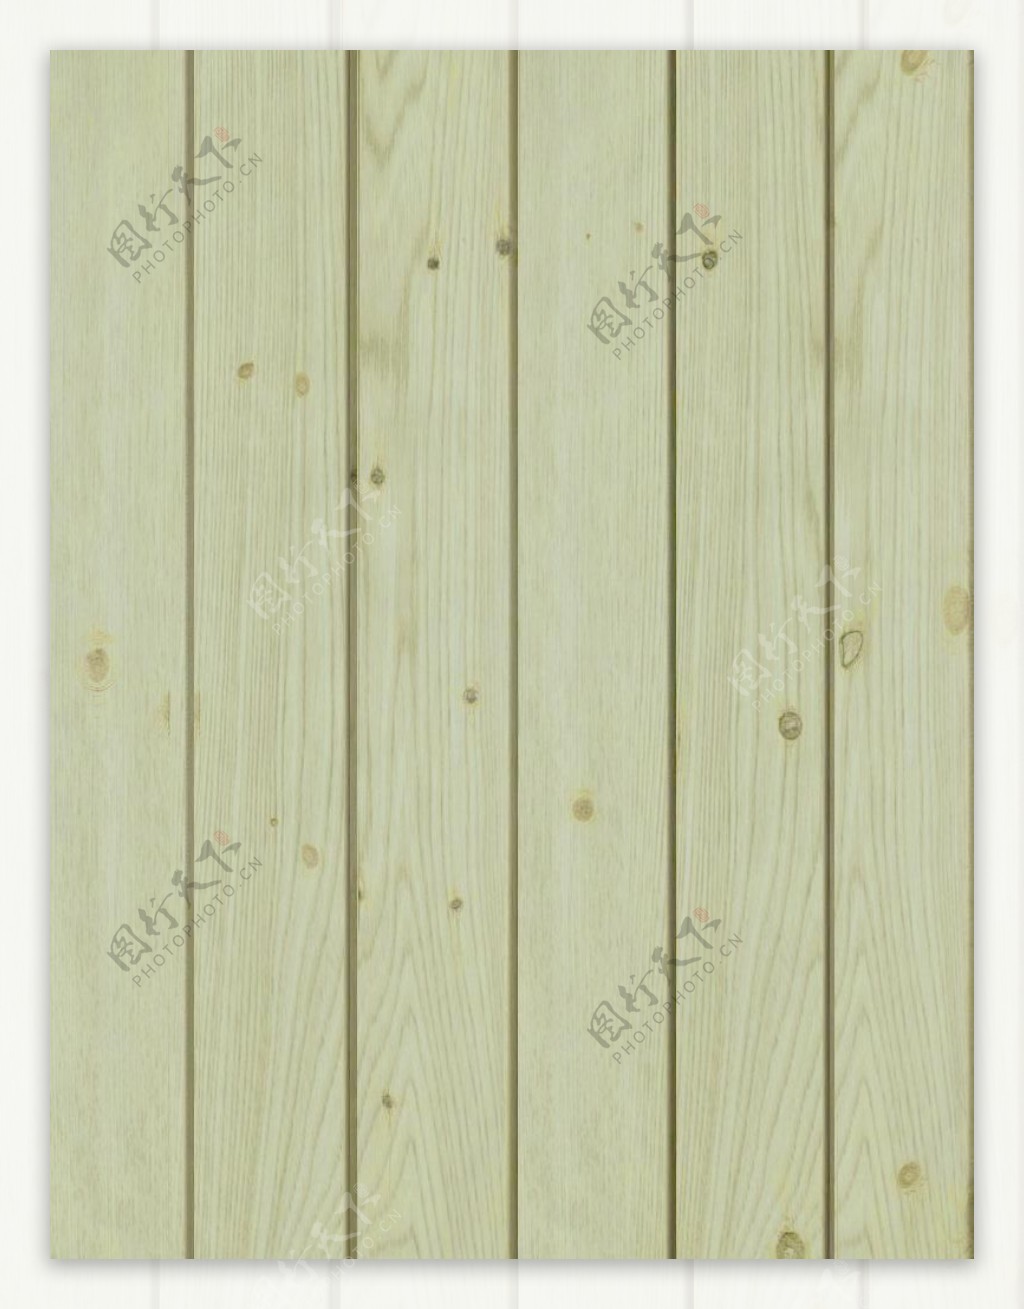 17629木纹板材桑拿板